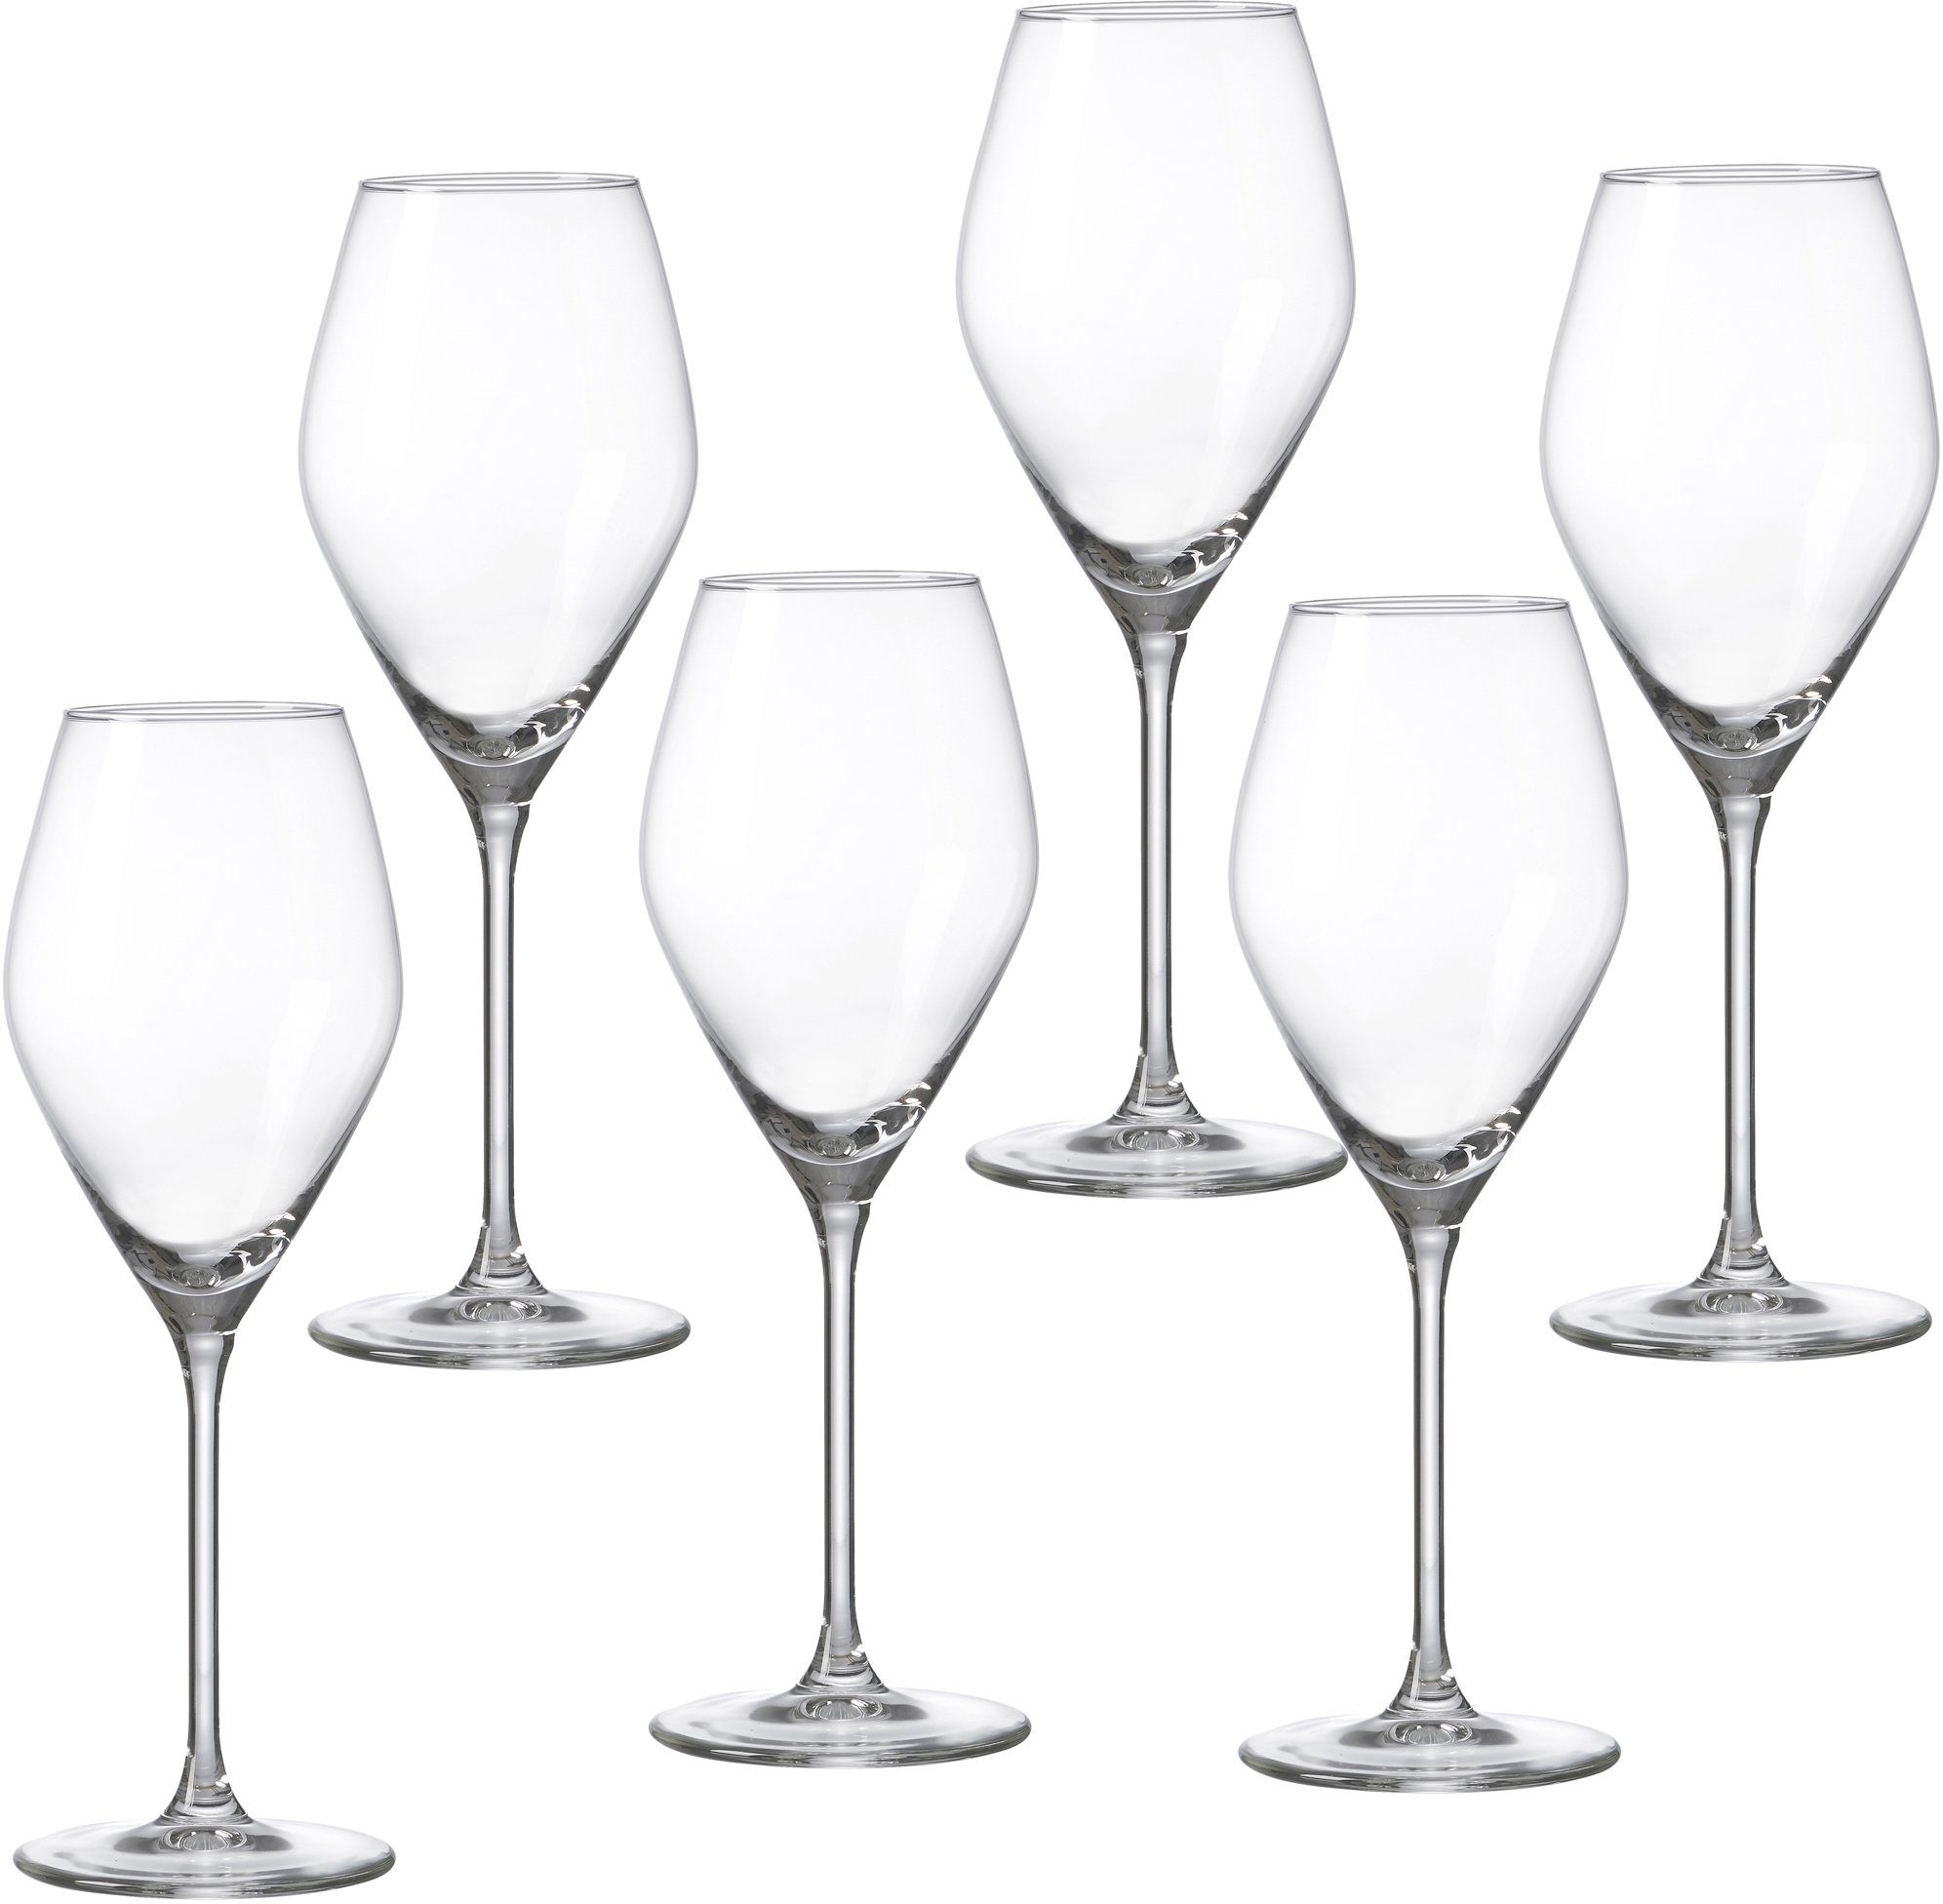 Ritzenhoff & Breker wittewijnglas Salsa robuust en helder kristal, 6-delig (set, 6-delig)